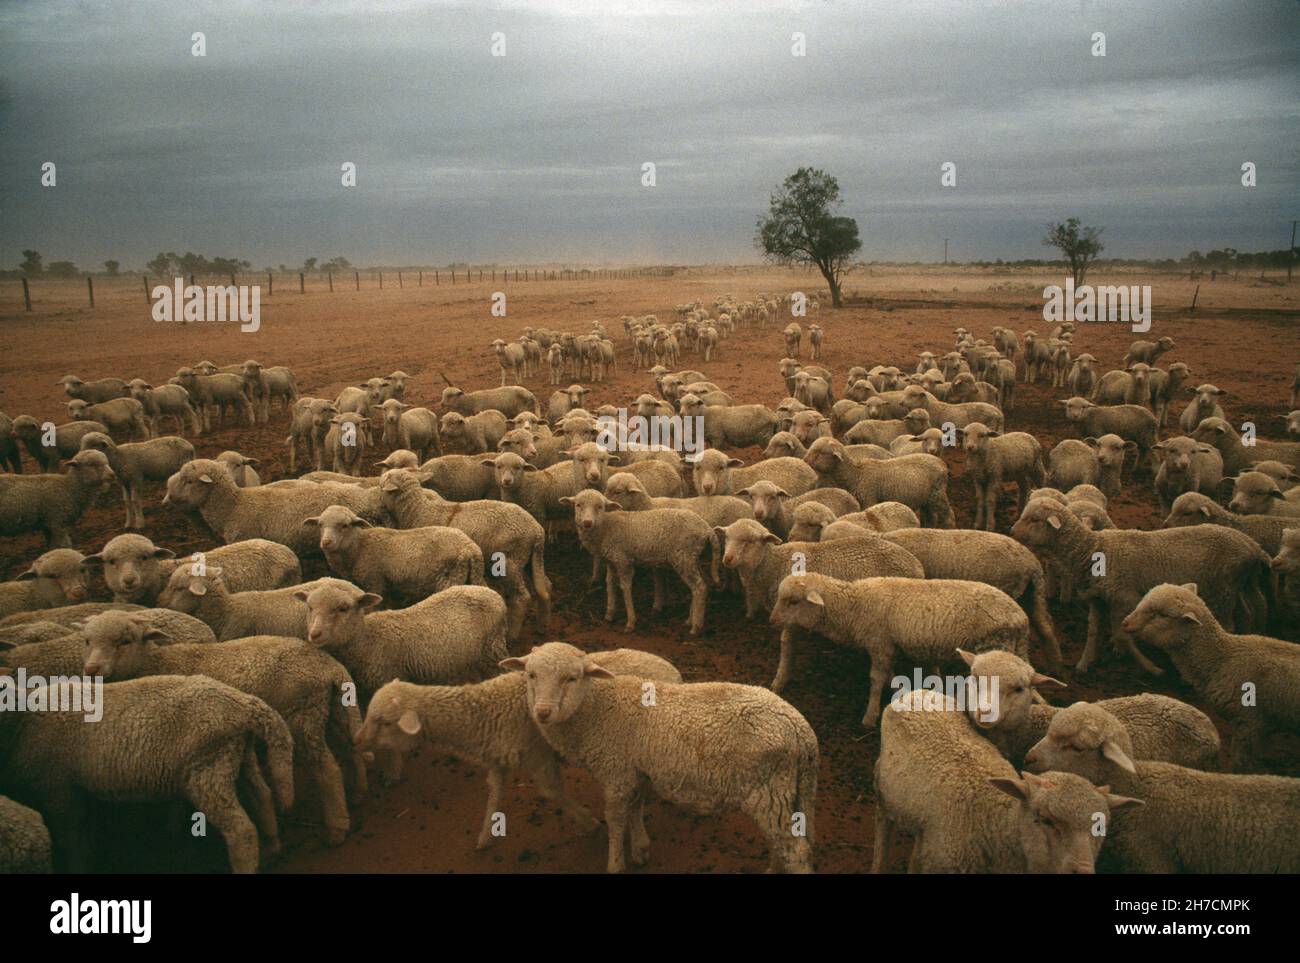 Australie.Queensland.Élevage.Troupeau de moutons dans un paysage sec et orageux. Banque D'Images